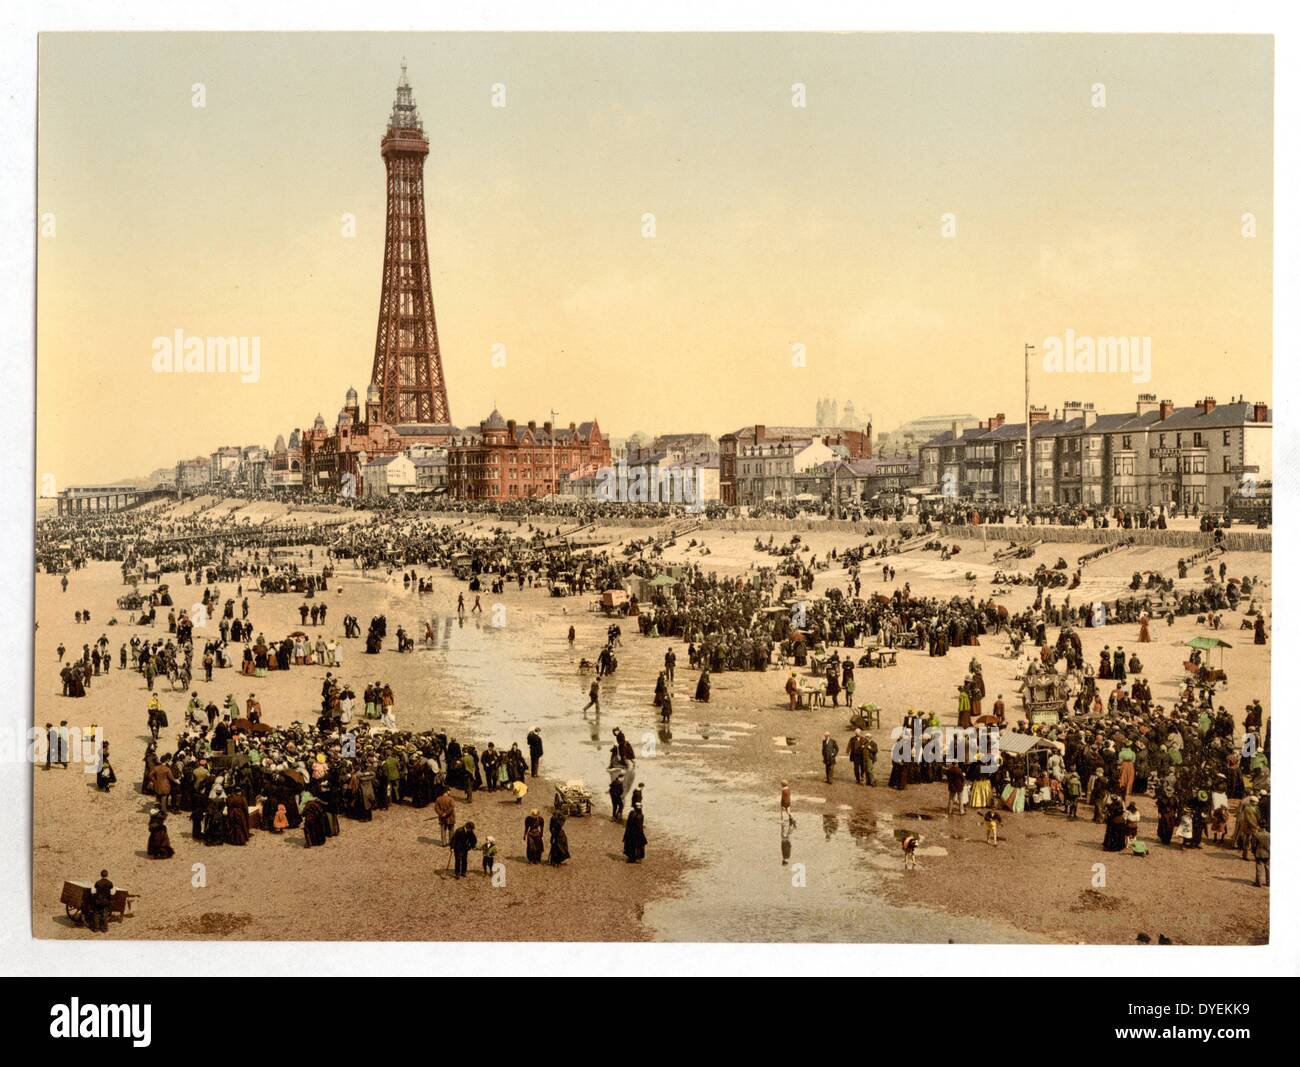 La Promenade et la Tour de la jetée sud de Blackpool, Angleterre, 1900 Banque D'Images